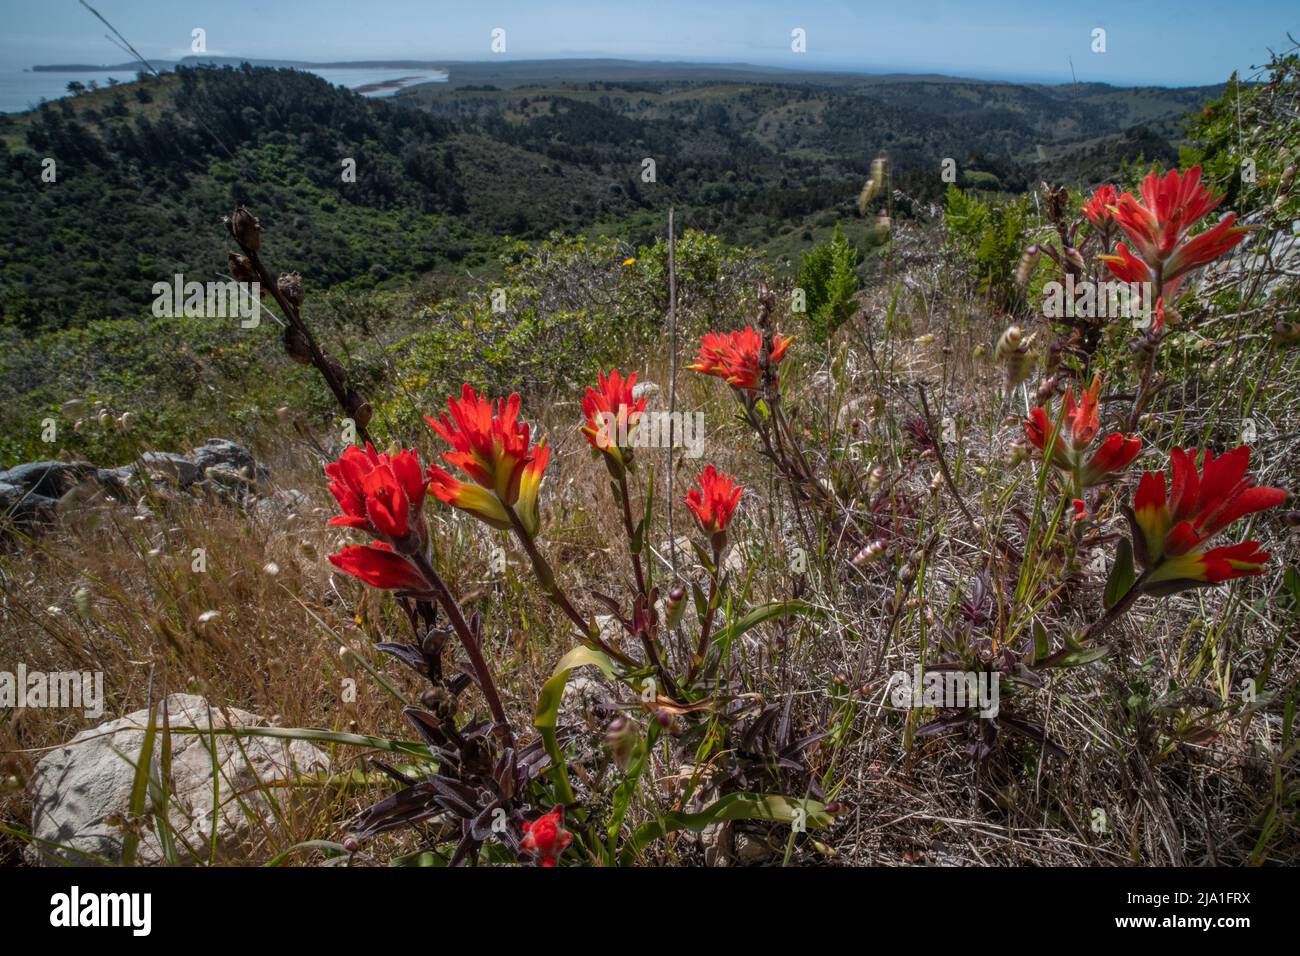 Pinceau indien de la côte (Castilleja affinis) une fleur sauvage vive pousse sur une colline surplombant la côte et l'océan Pacifique en Californie. Banque D'Images